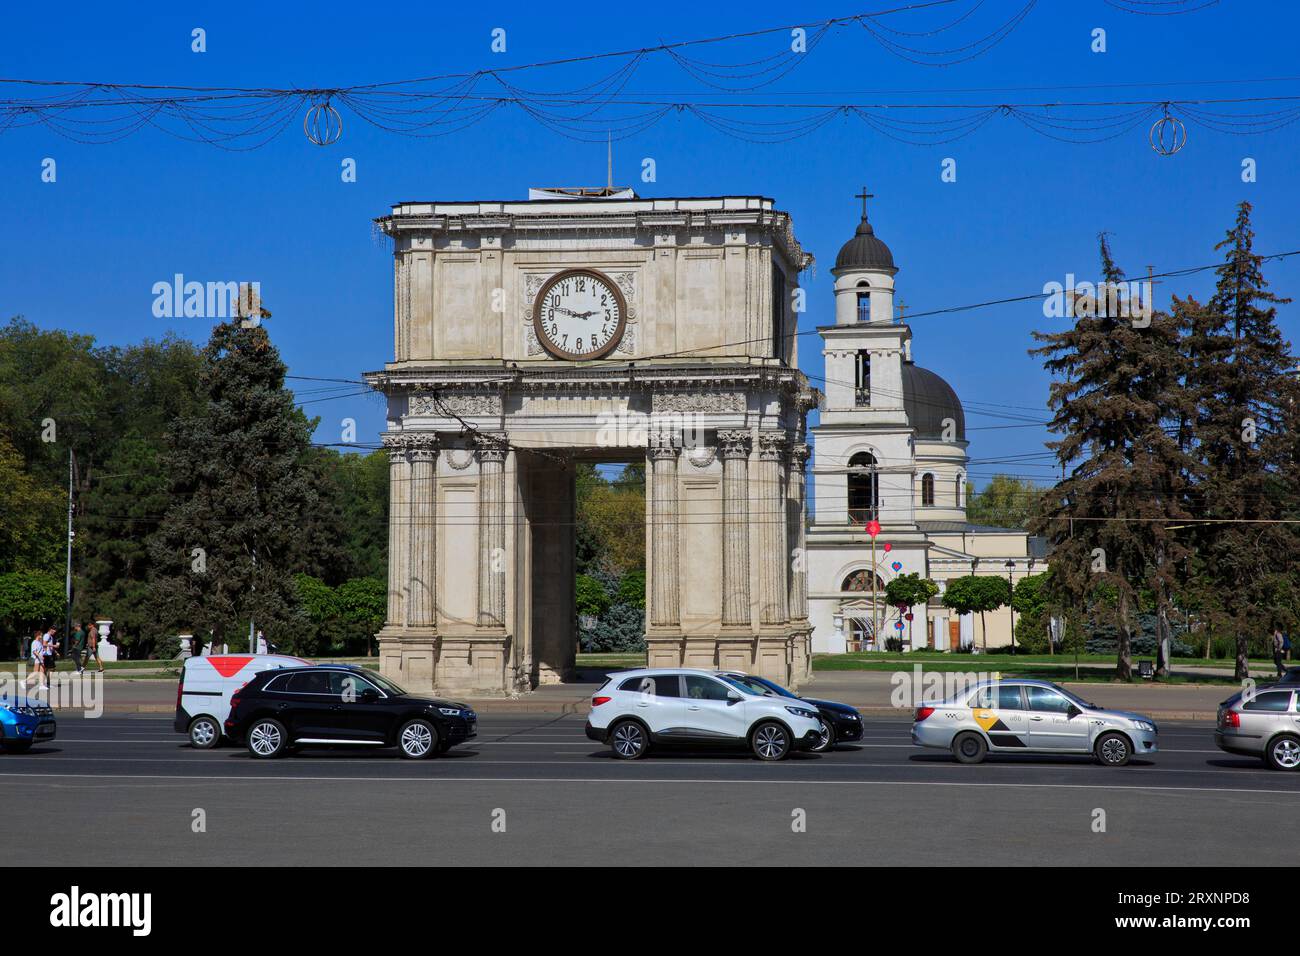 L'Arco di Trionfo (1841) e la Cattedrale della Natività (1836) con il campanile nella Piazza della grande Assemblea Nazionale a Chisinau, Moldavia Foto Stock